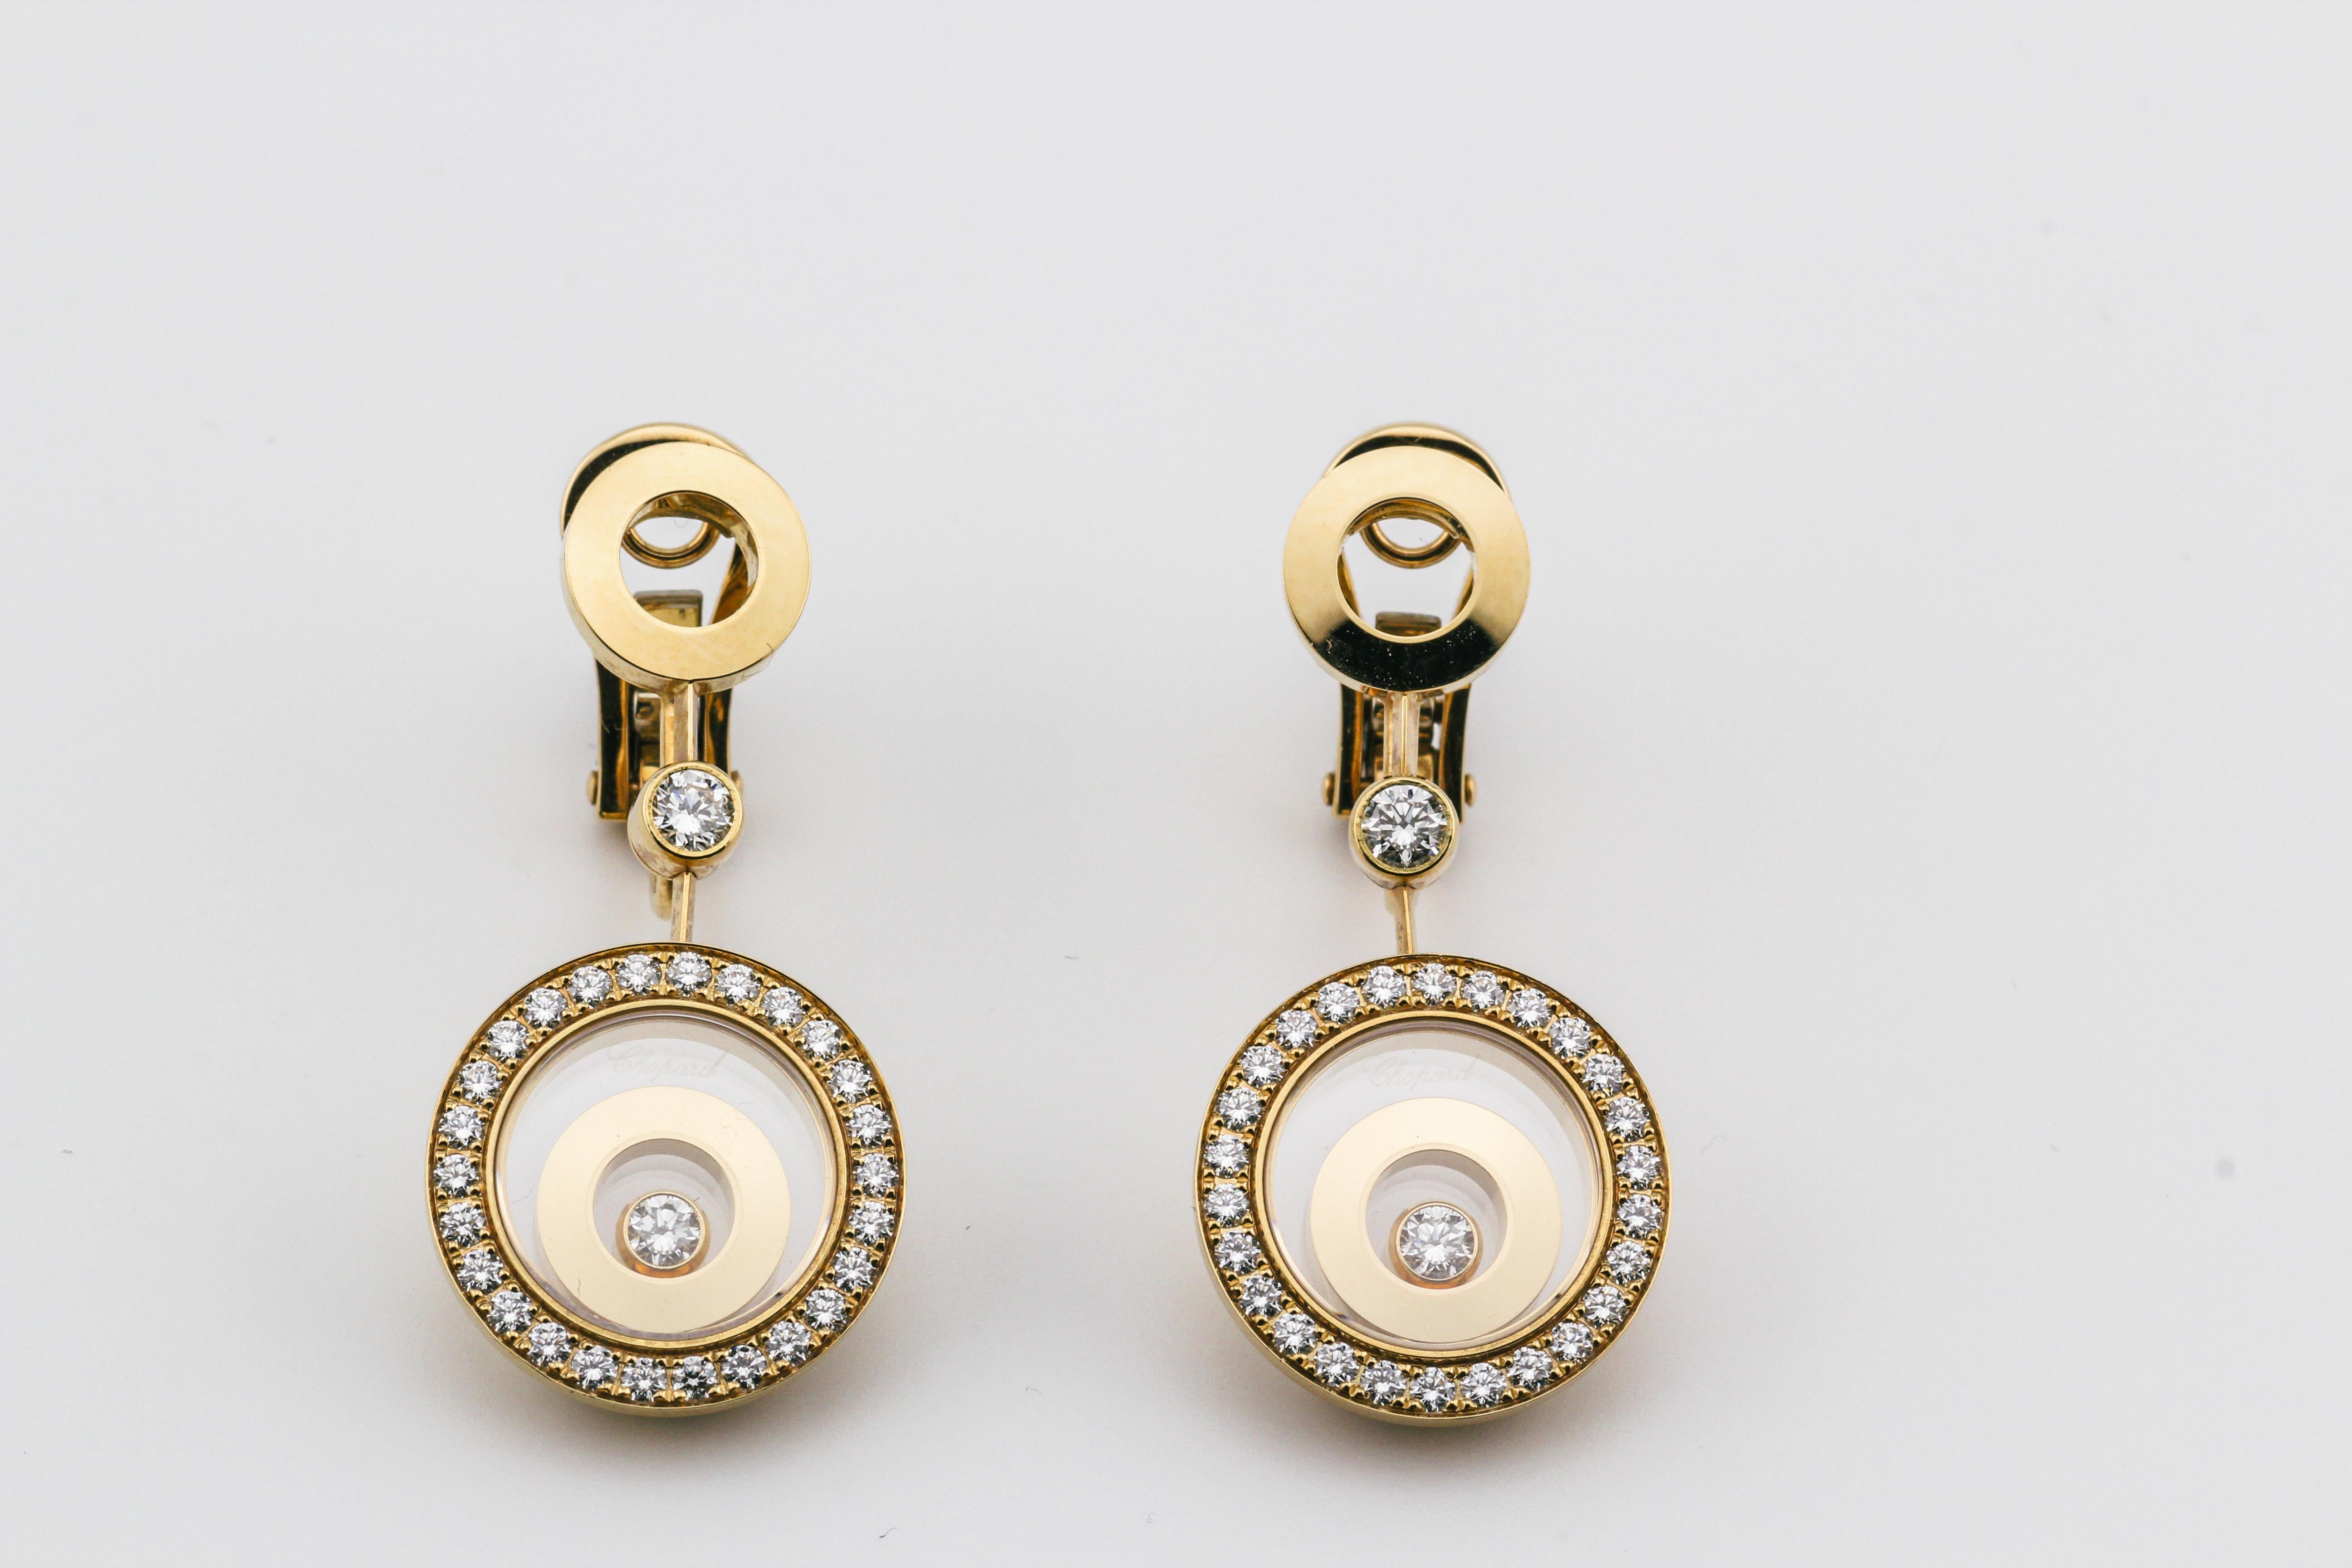 Die exquisiten Chopard Happy Spirit Diamond Drop Earrings aus 18-karätigem Roségold sind ein Beweis für zeitgenössische Eleganz und zeitlosen Charme. Diese mit Präzision und Kunstfertigkeit gefertigten, atemberaubenden Ohrringe zeigen die perfekte